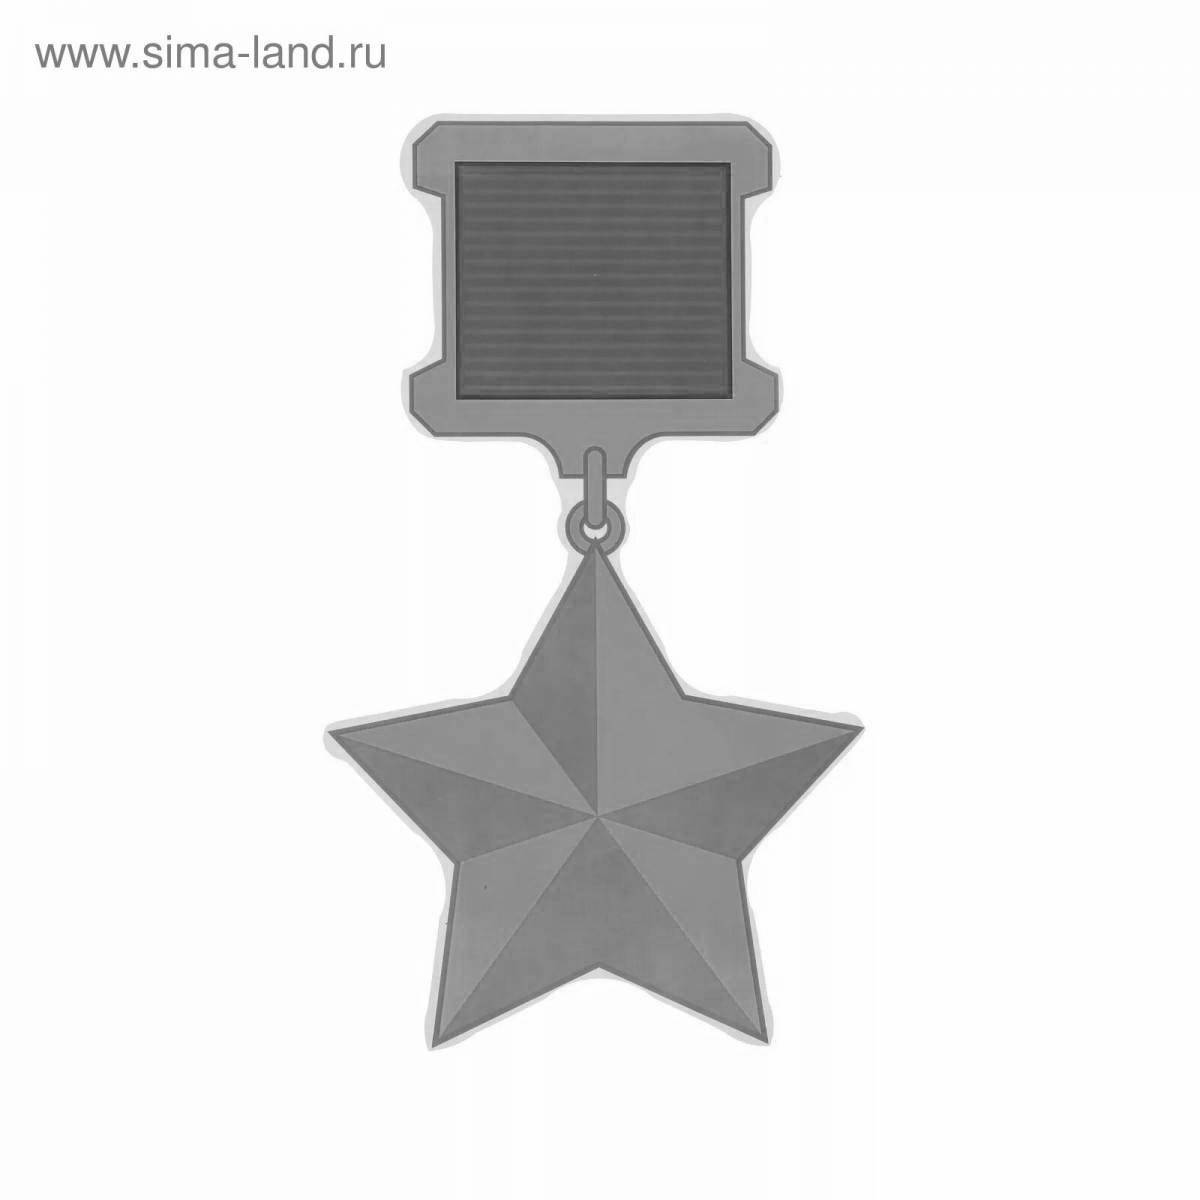 Славная раскраска звезда героя советского союза